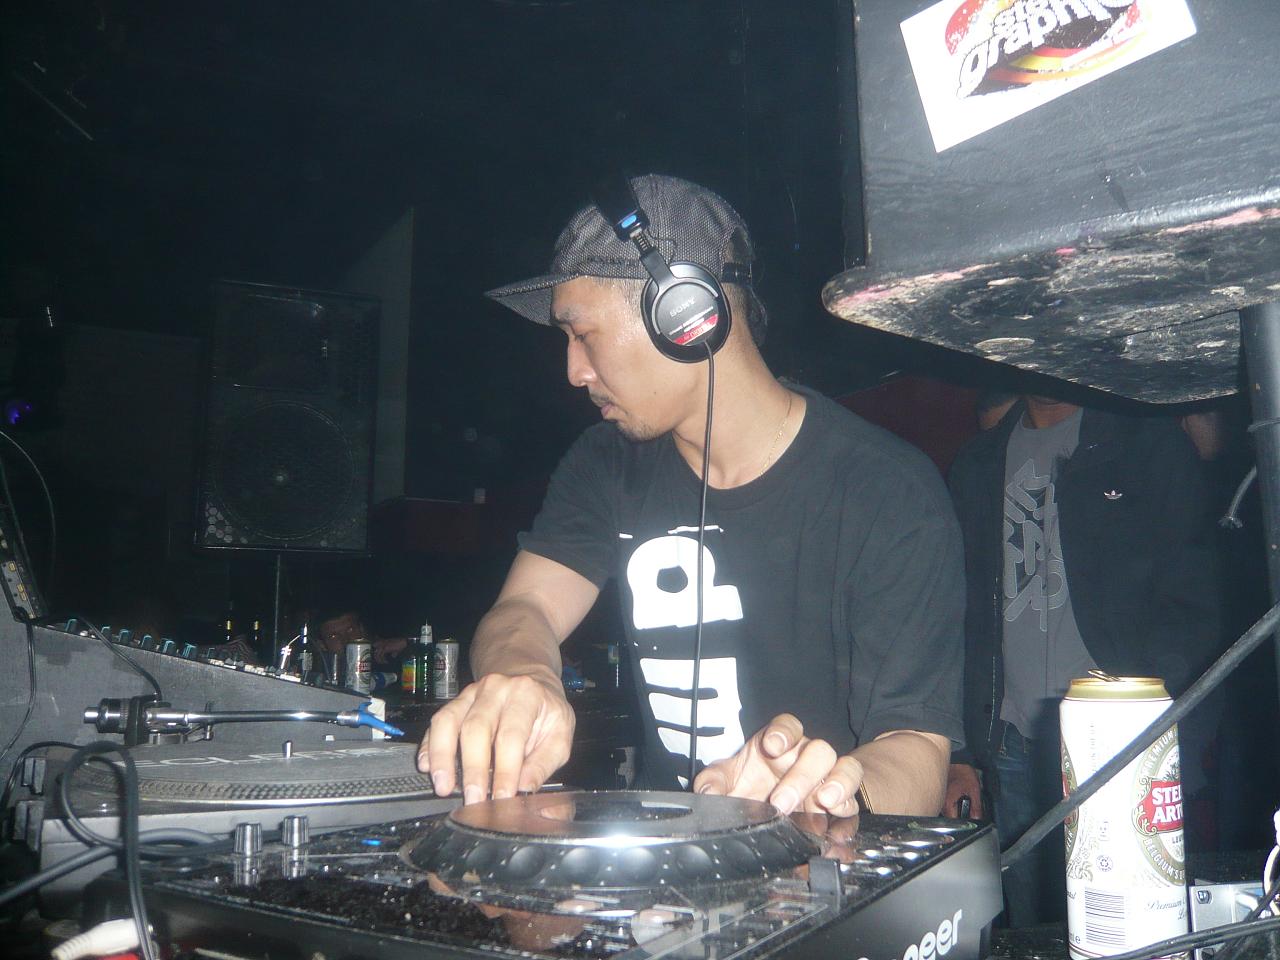 a man in a headphones at a dj set up